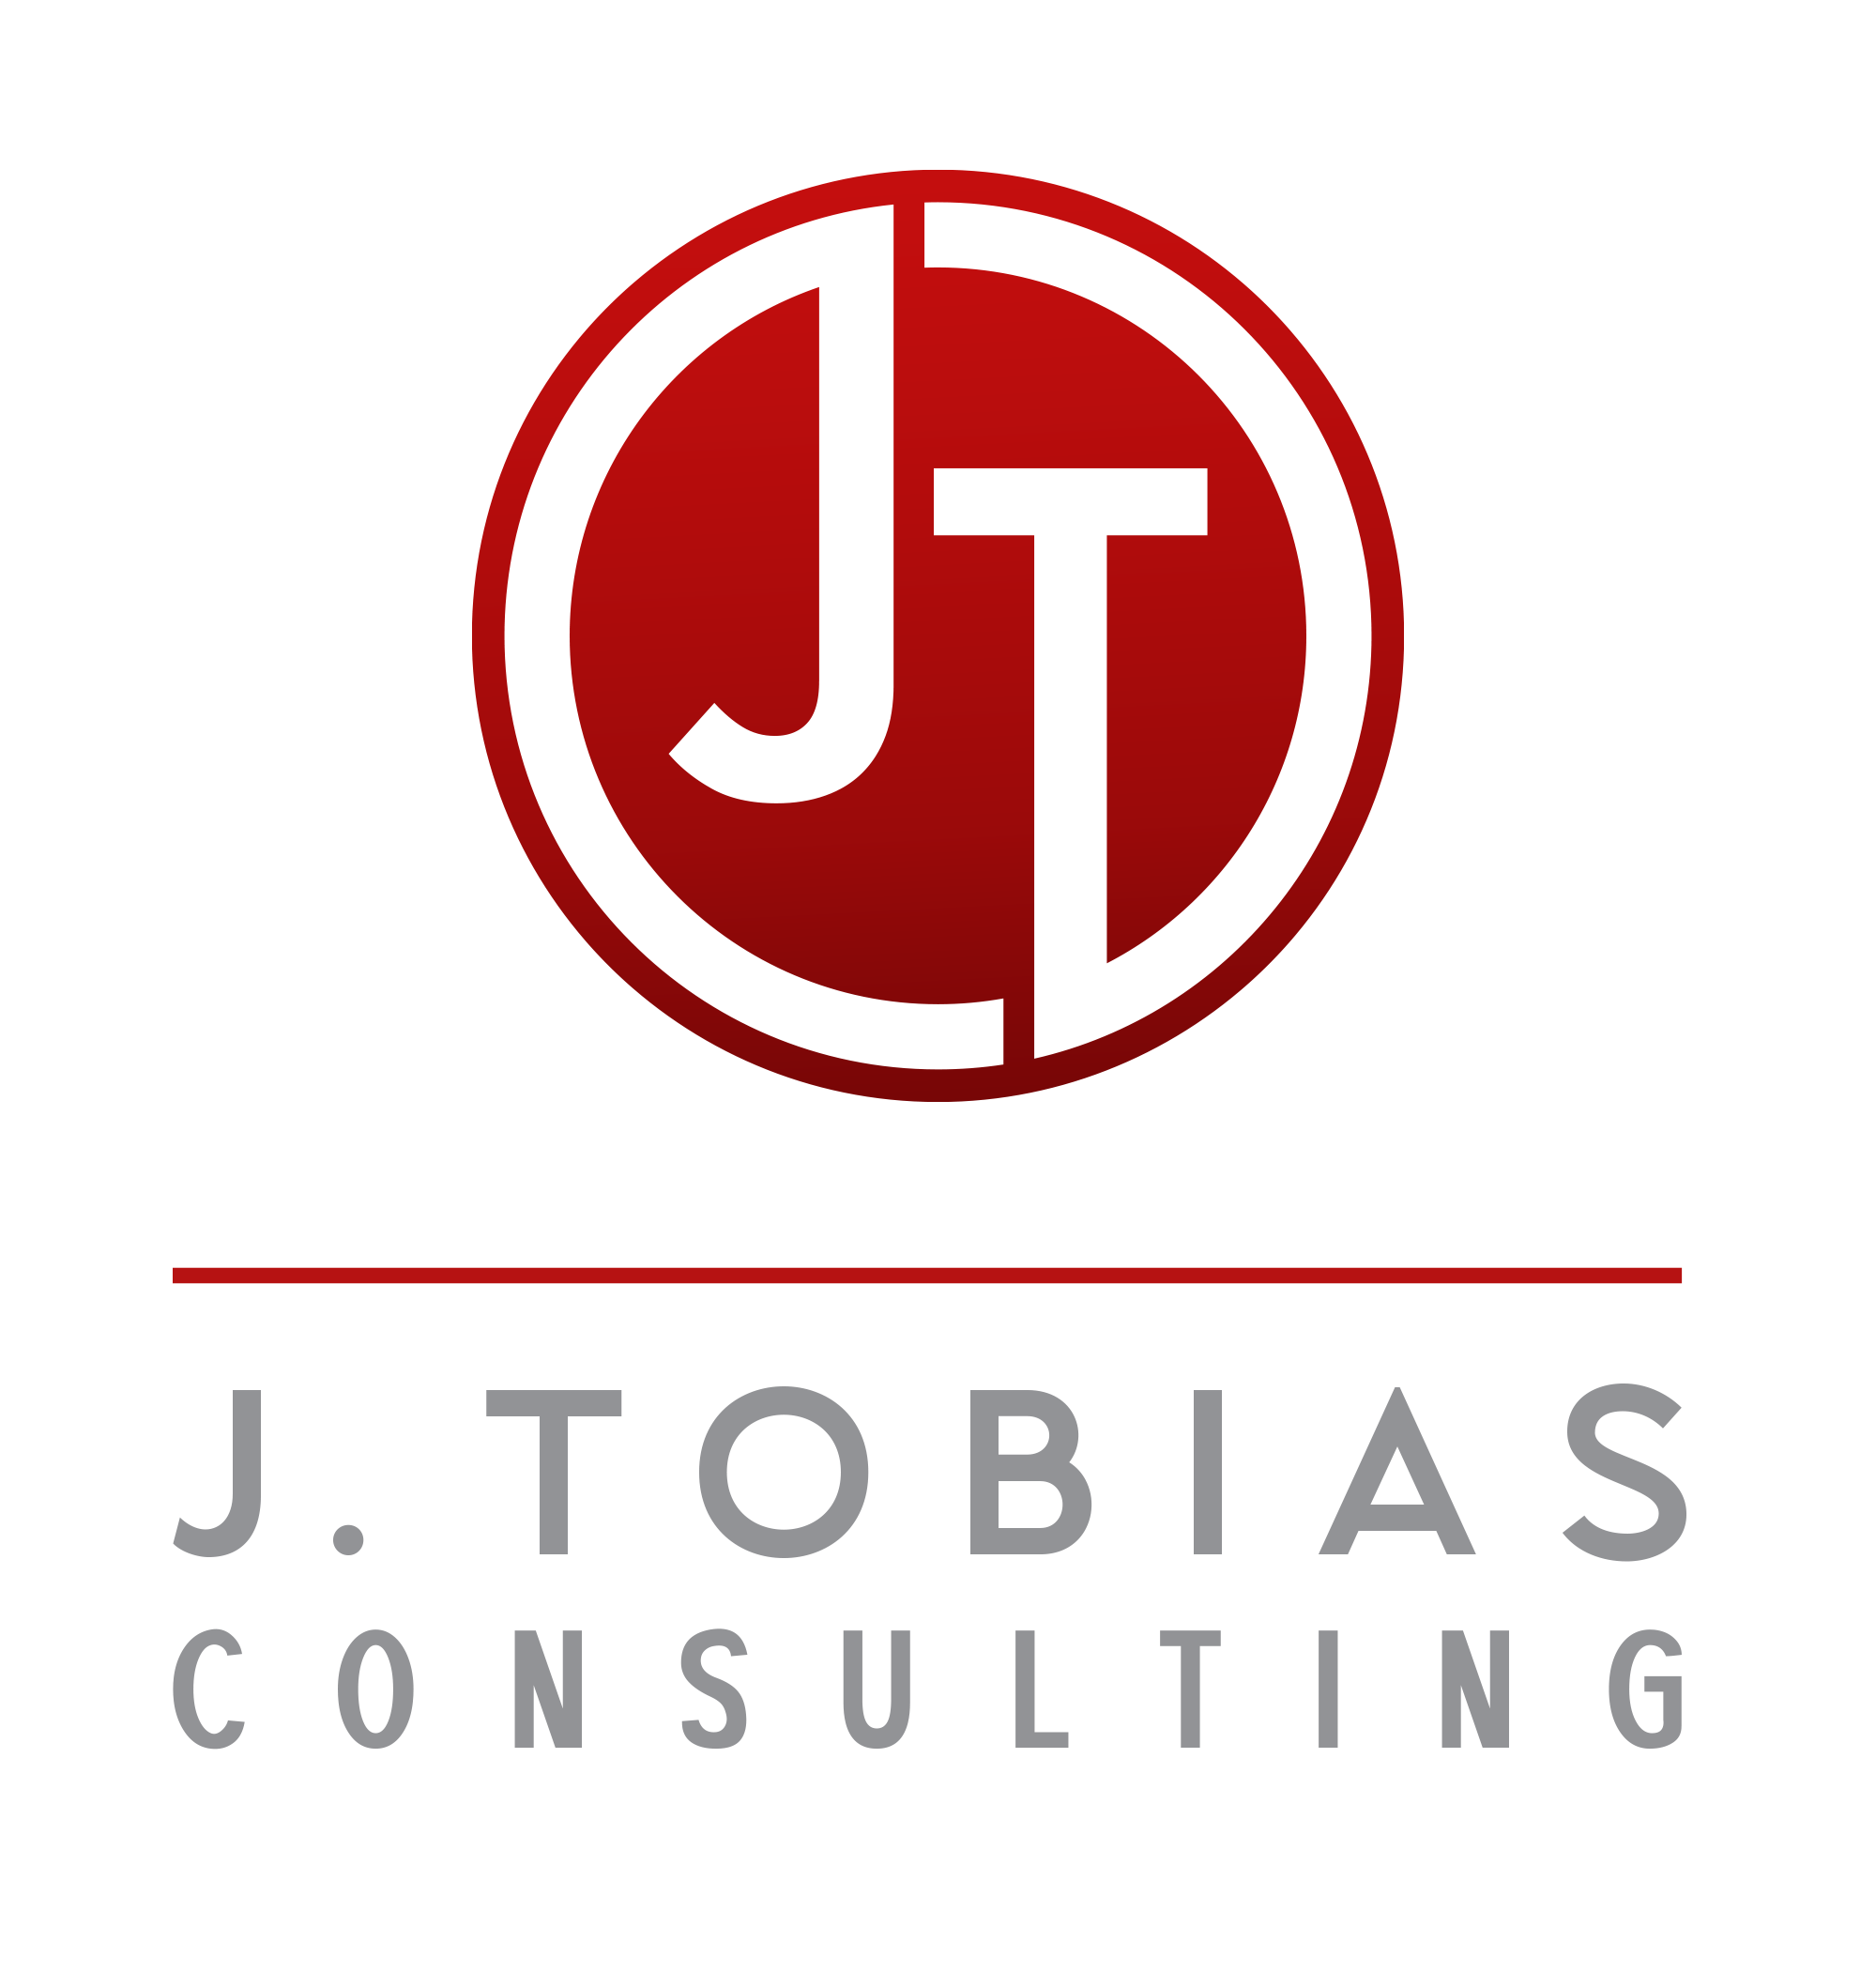 J. Tobias Consulting